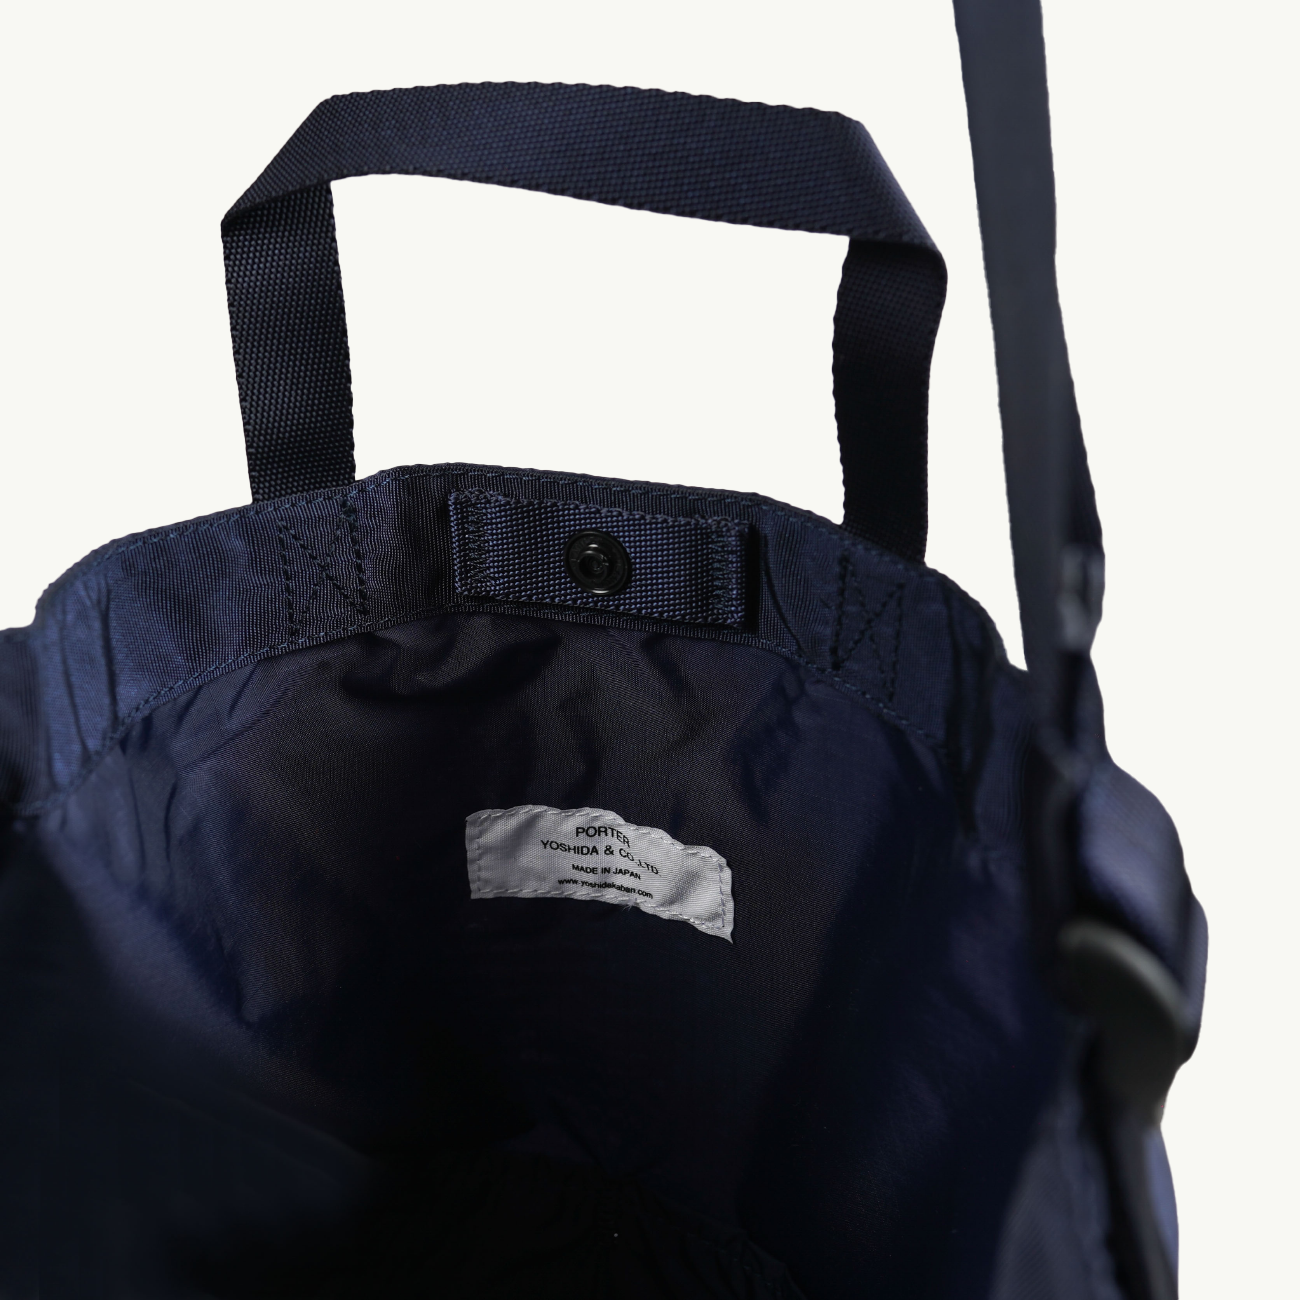 Flex 2 Way Shoulder Bag - Navy